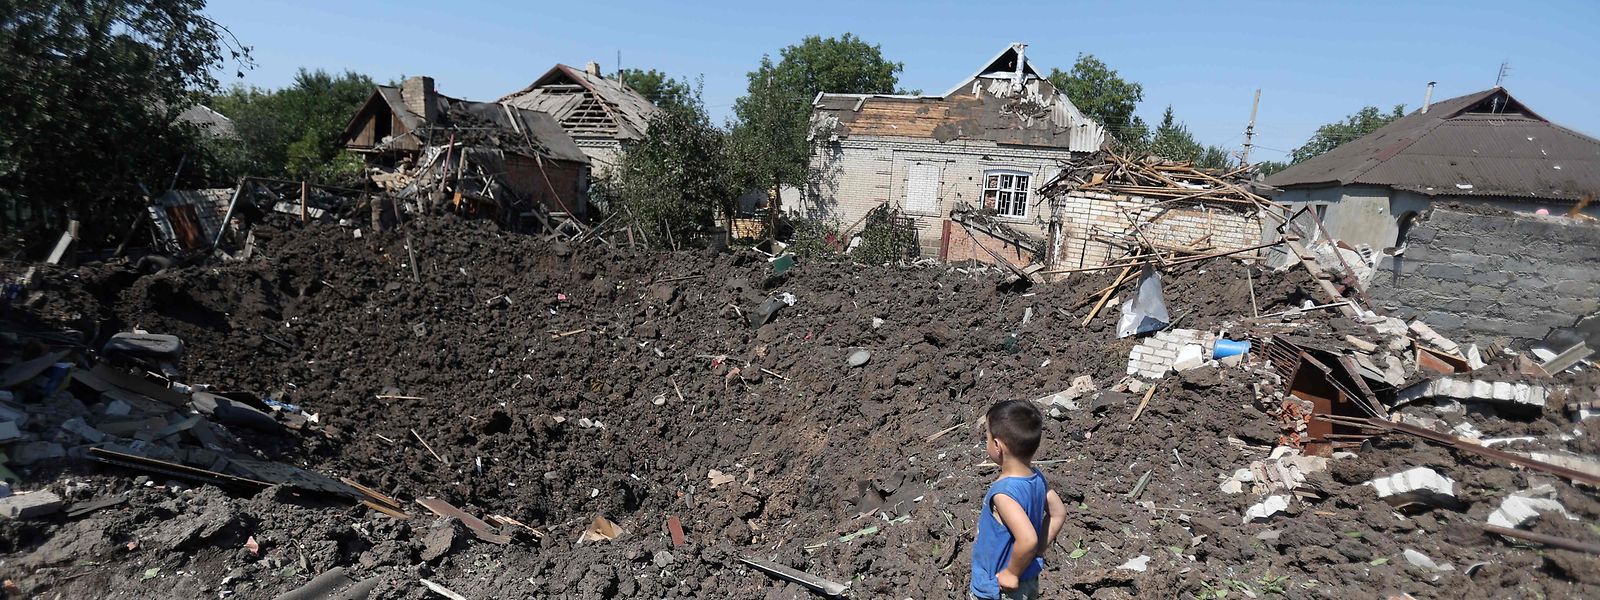 Der Ukraine-Krieg mitsamt seinen schrecklichen Folgen für die Zivilbevölkerung hätte vielleicht verhindert werden können, meint der Autor.